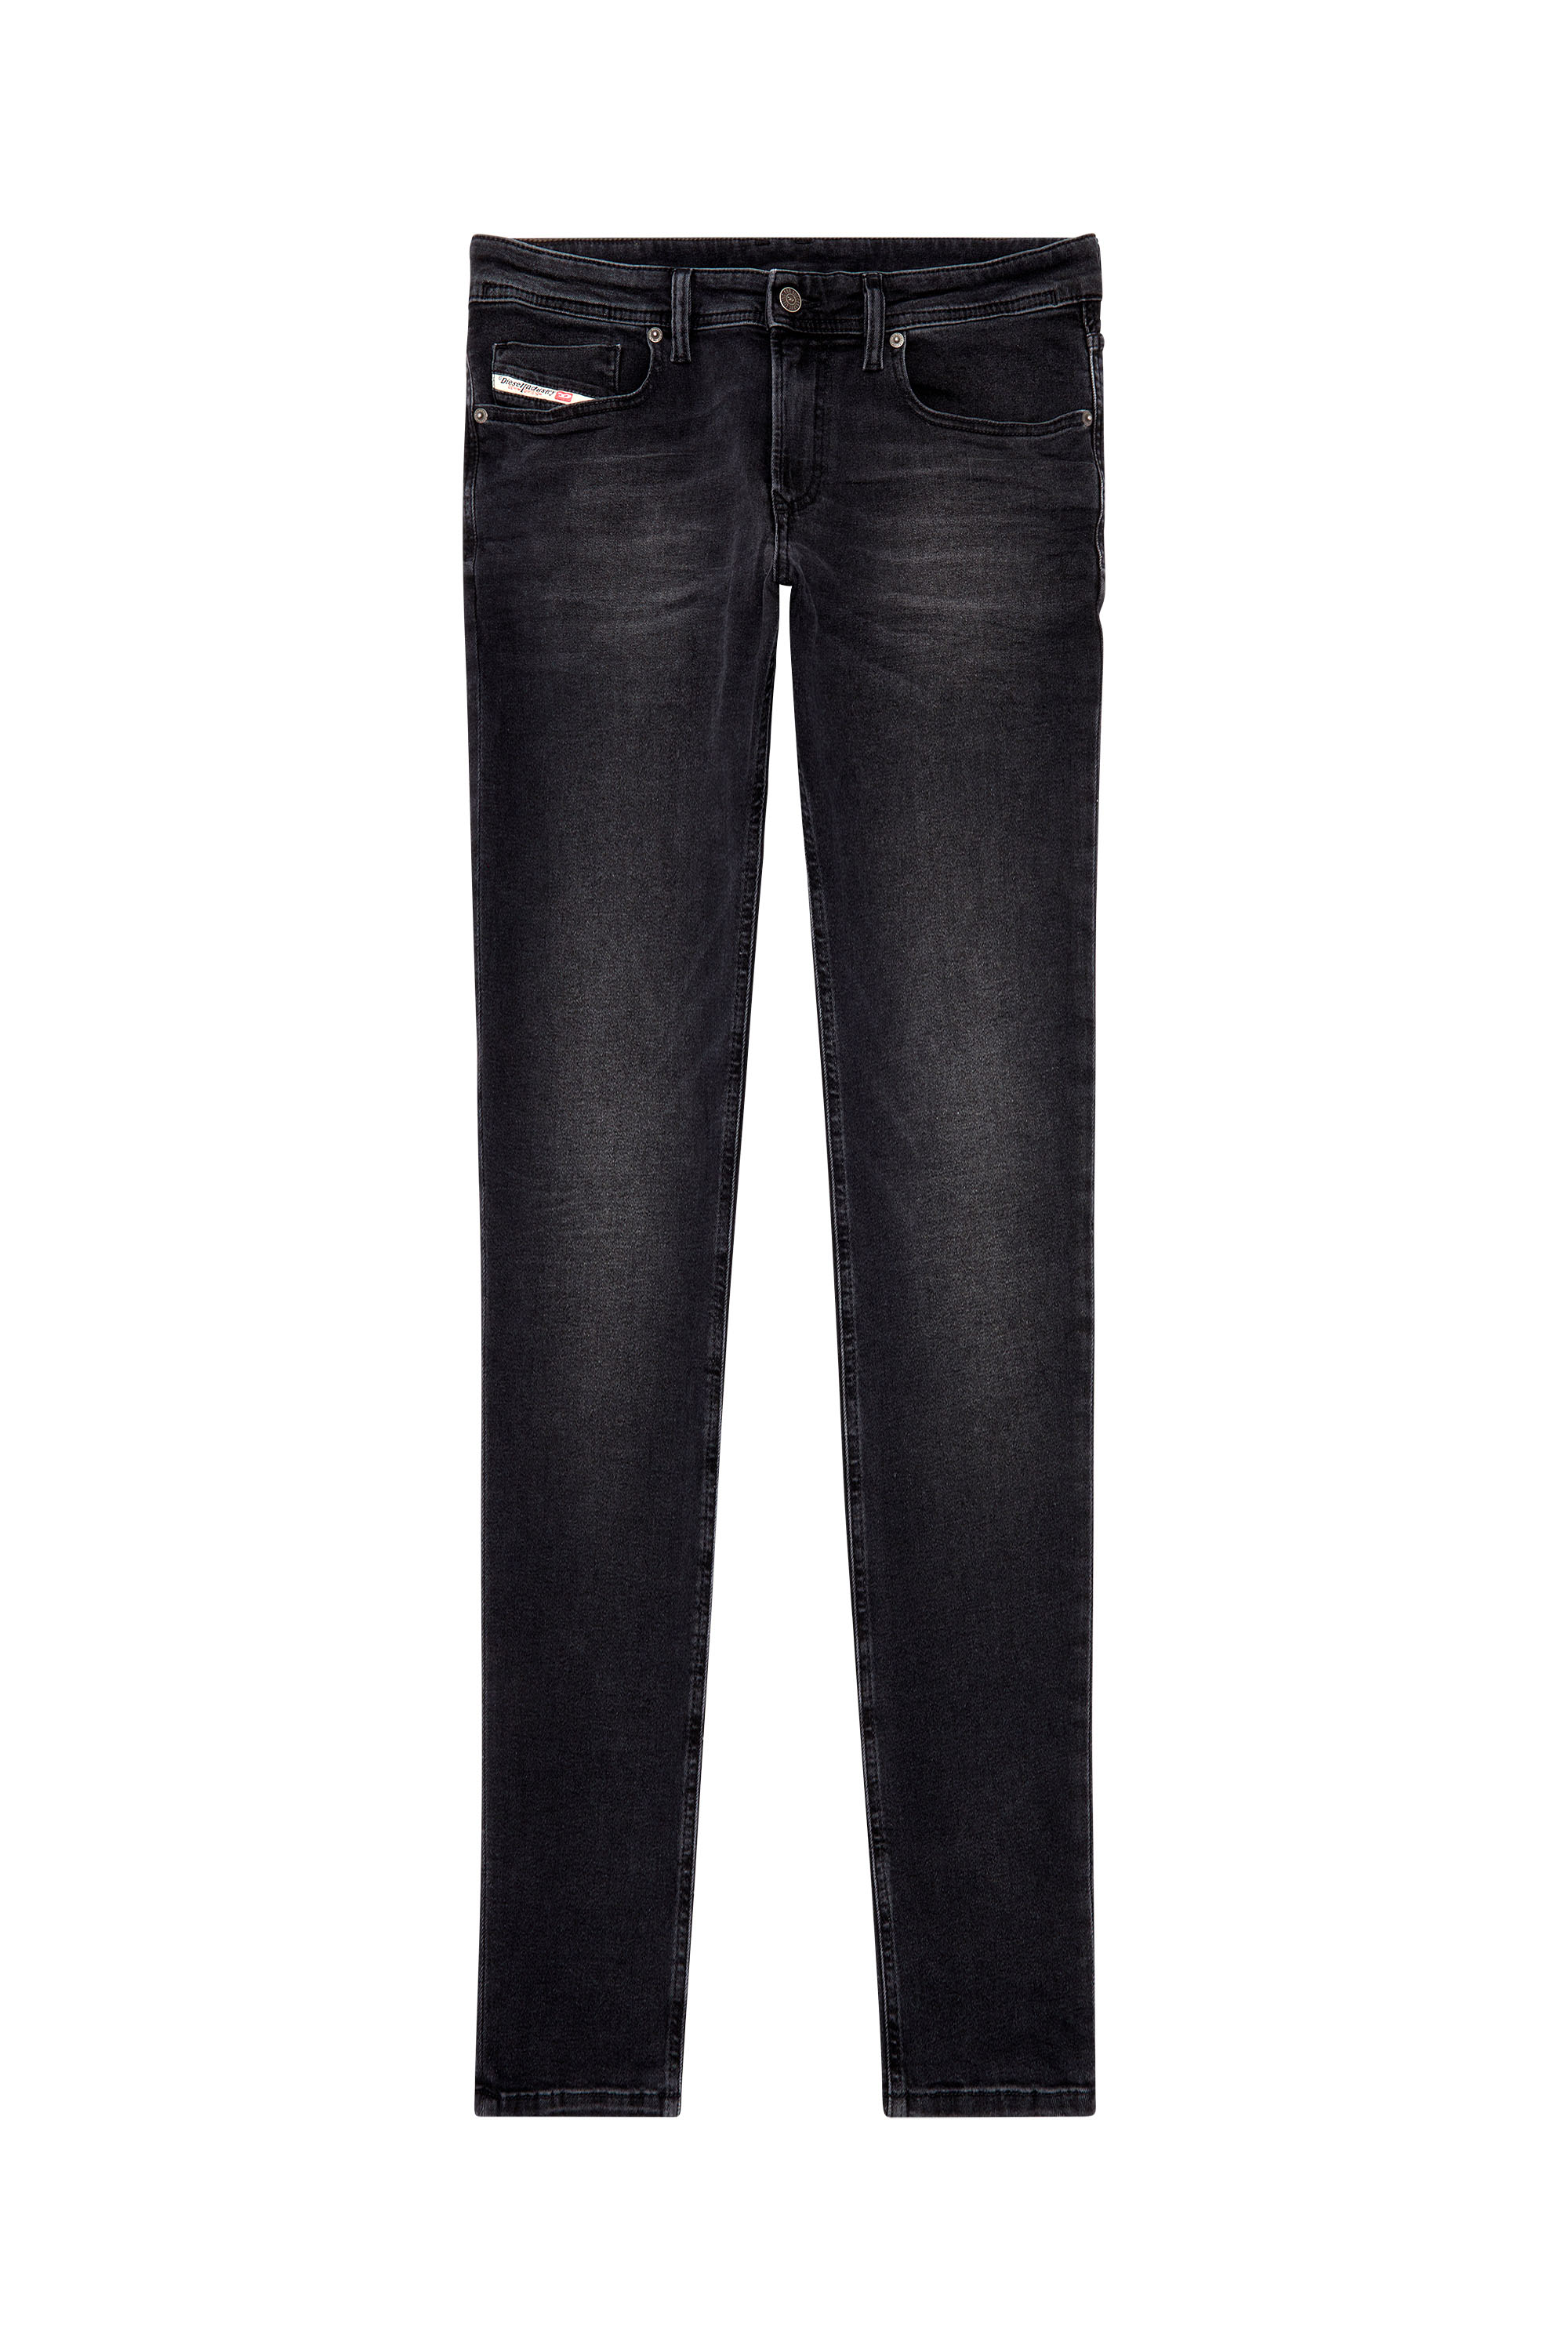 Diesel - Man Skinny Jeans 1979 Sleenker 0PFAS, Black/Dark grey - Image 3